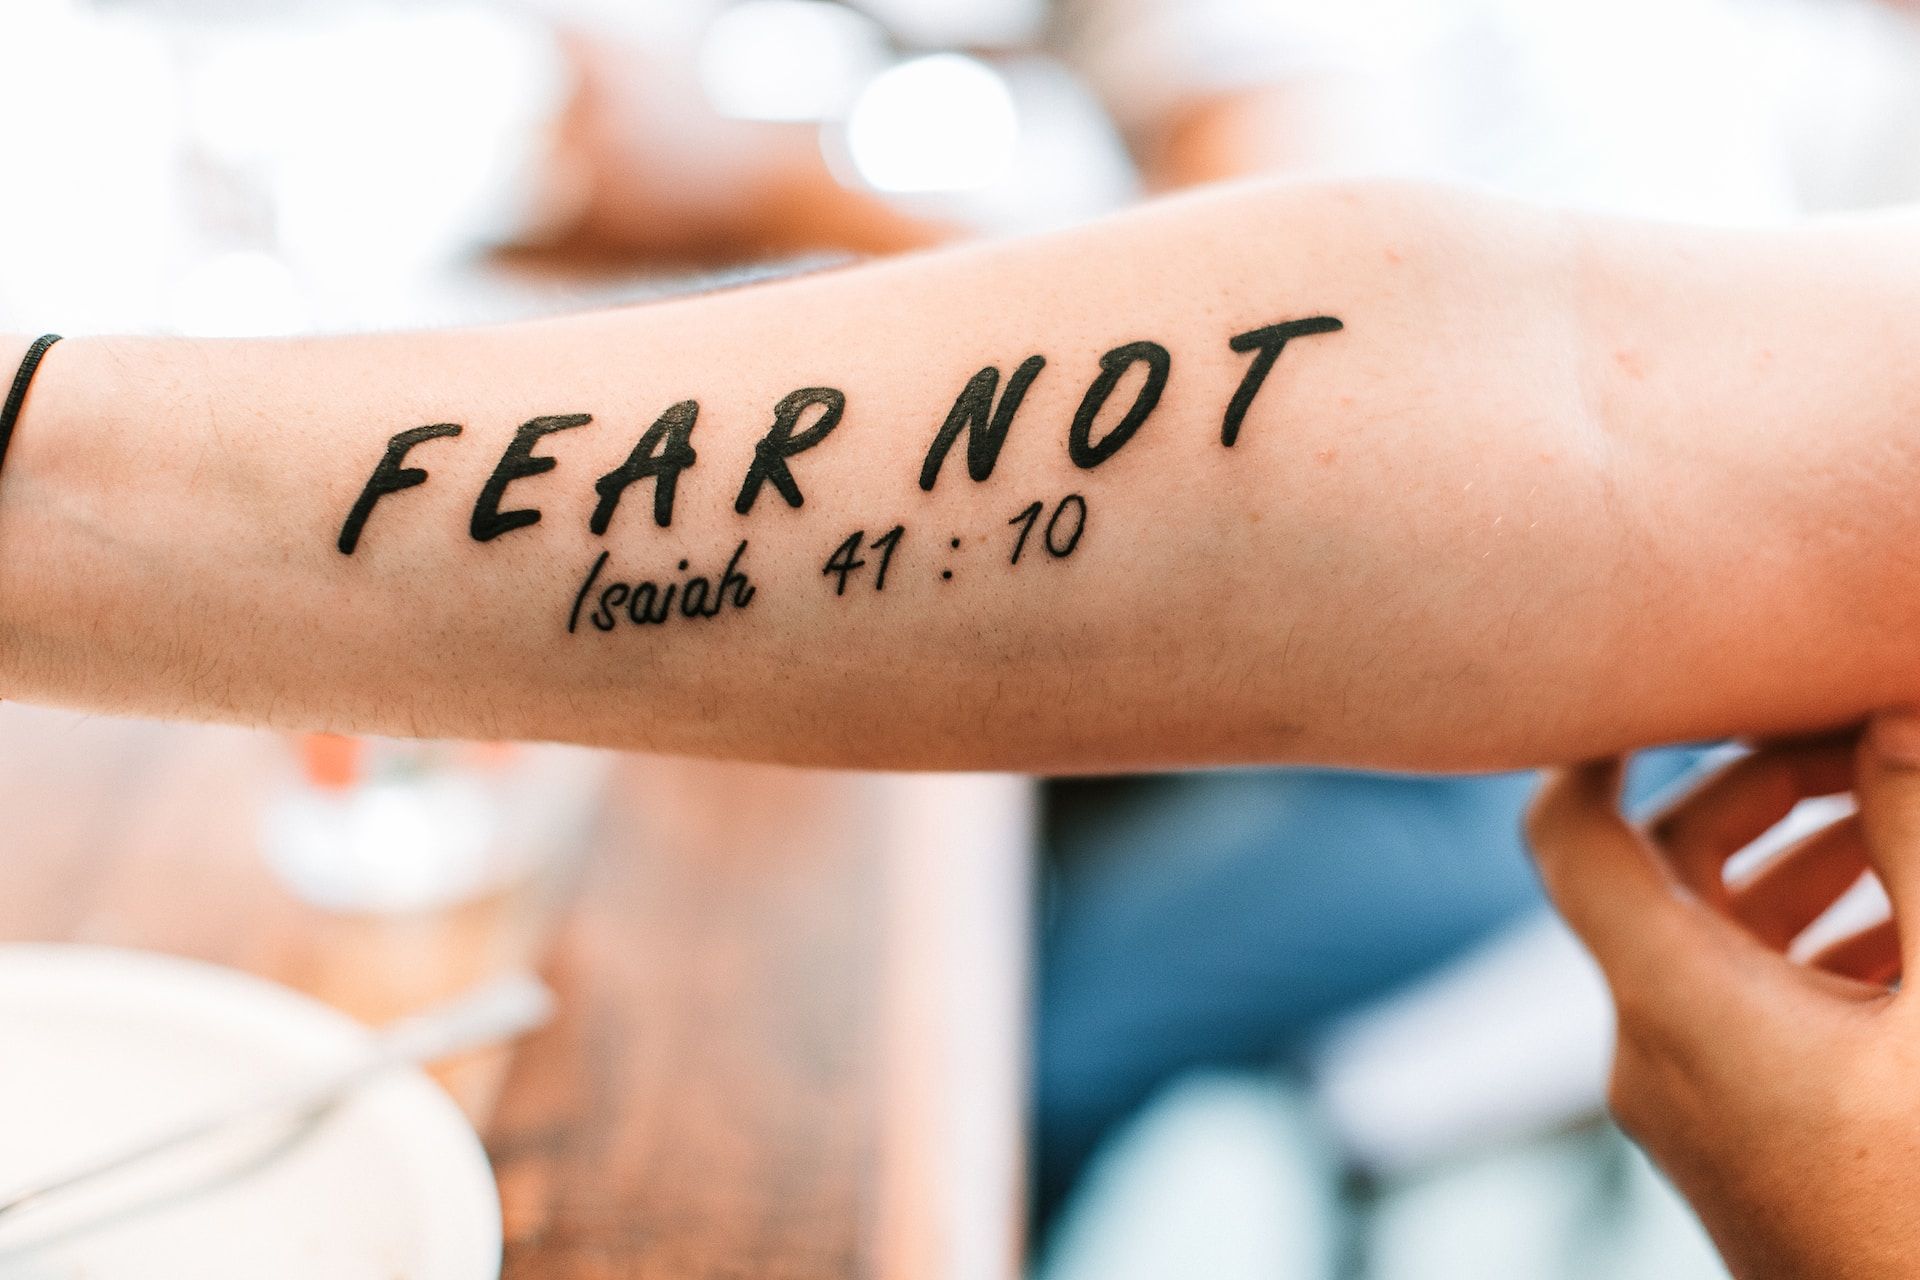 bras tatoué avec un verset biblique - Photo by James Coleman on https://unsplash.com/fr/photos/personne-avec-peur-pas-de-tatouage-sur-le-bras-m1lS3CwUOus